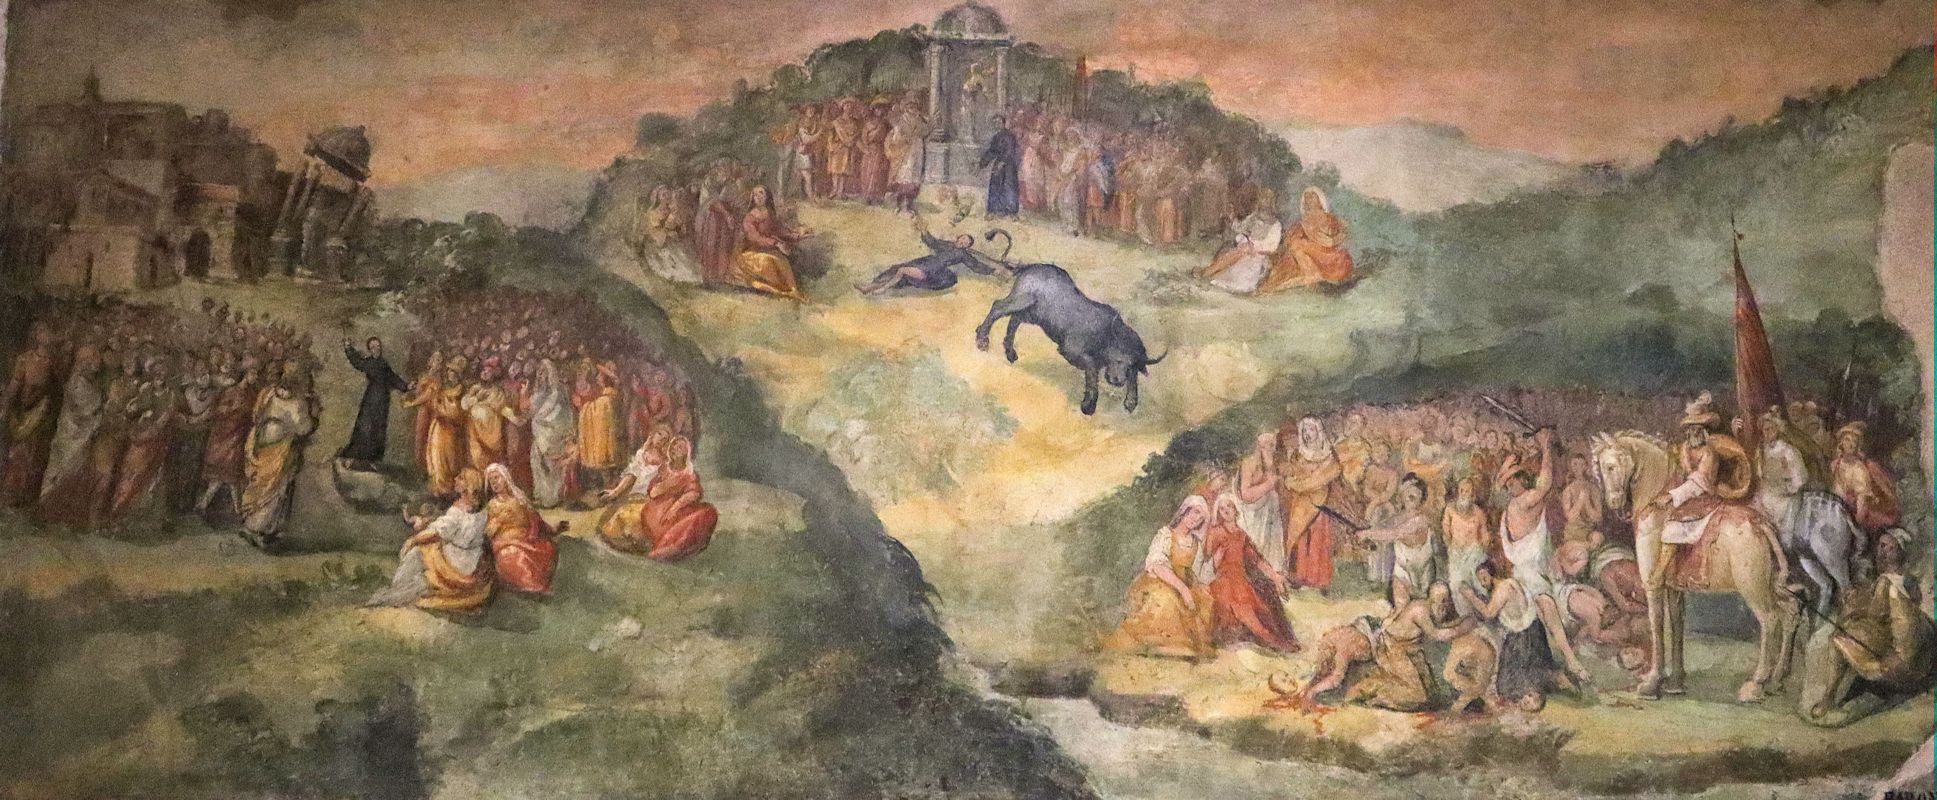 Fresko: das Martyrium von Hypolistus und Gefährten, in der Pfarrirche in Atripalda